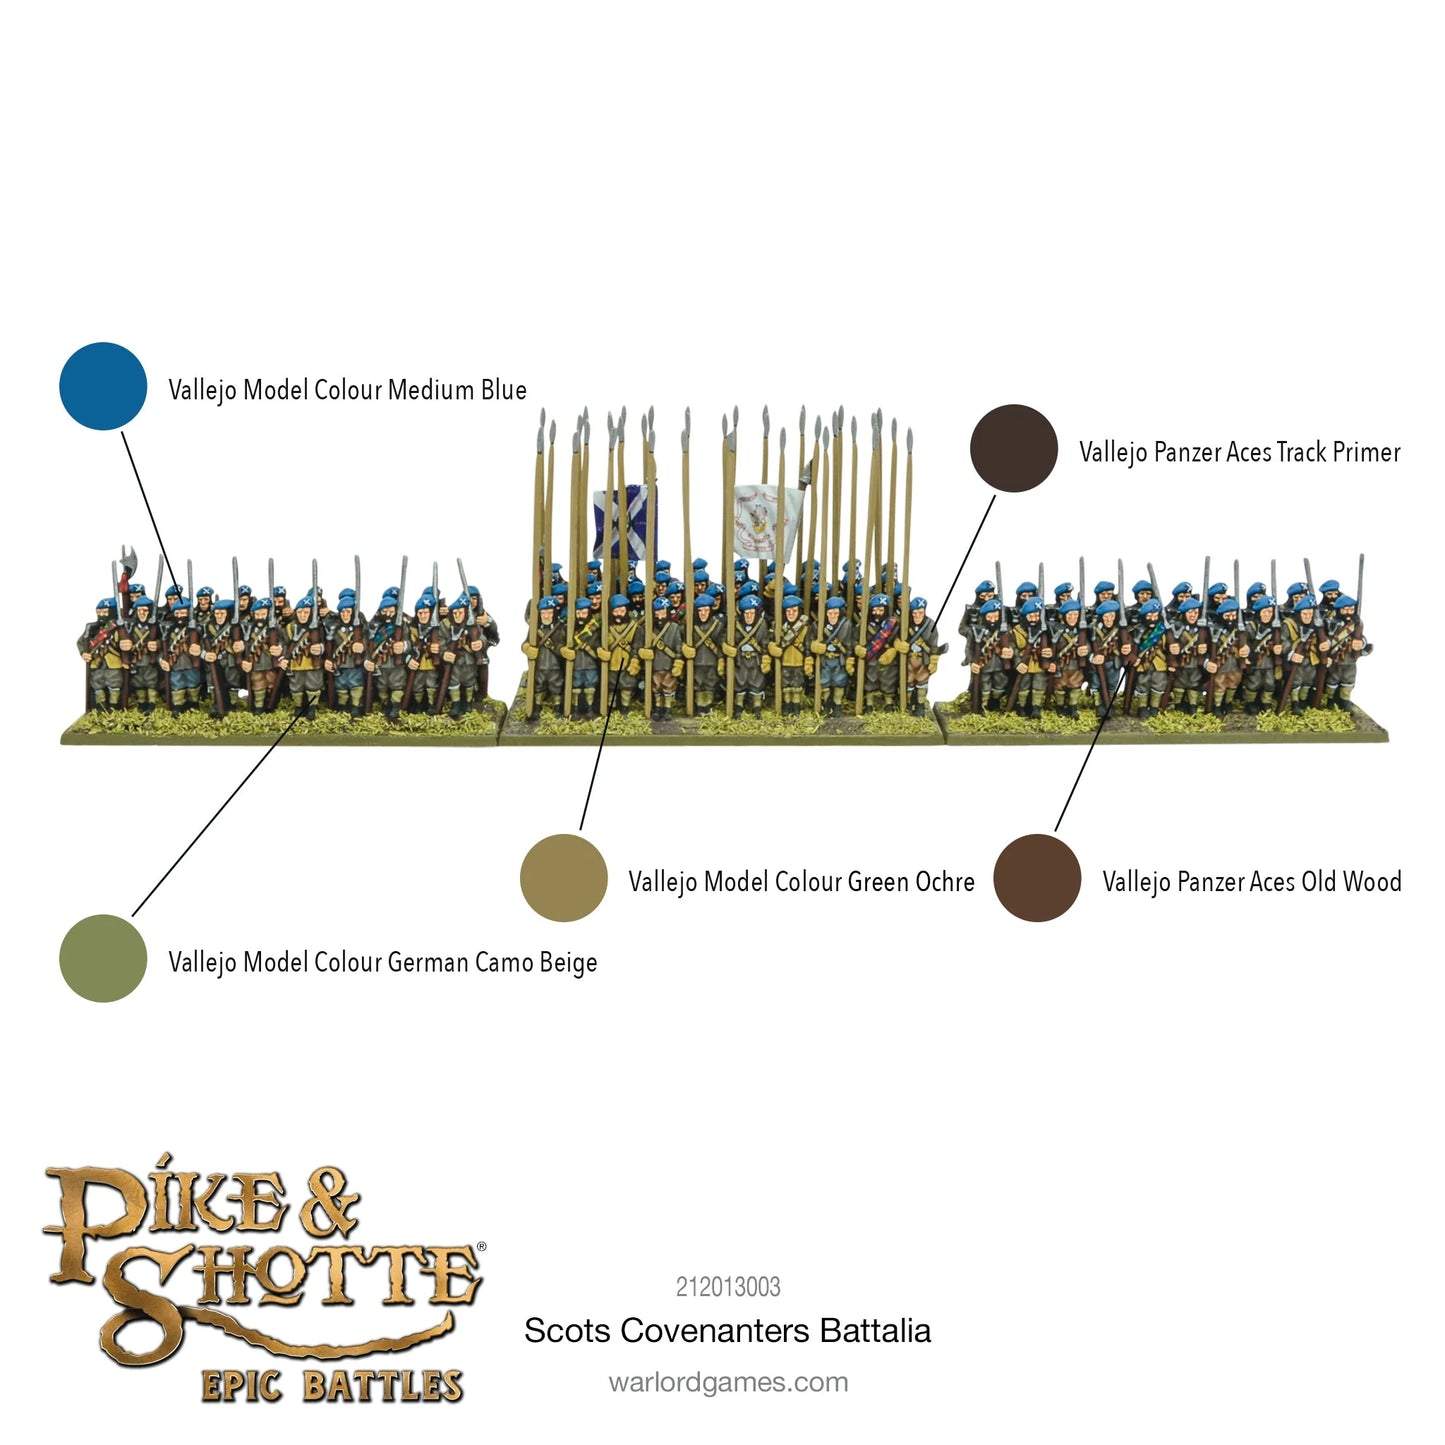 Pike & Shotte Epic Battles - Scots Covenanters Battalia